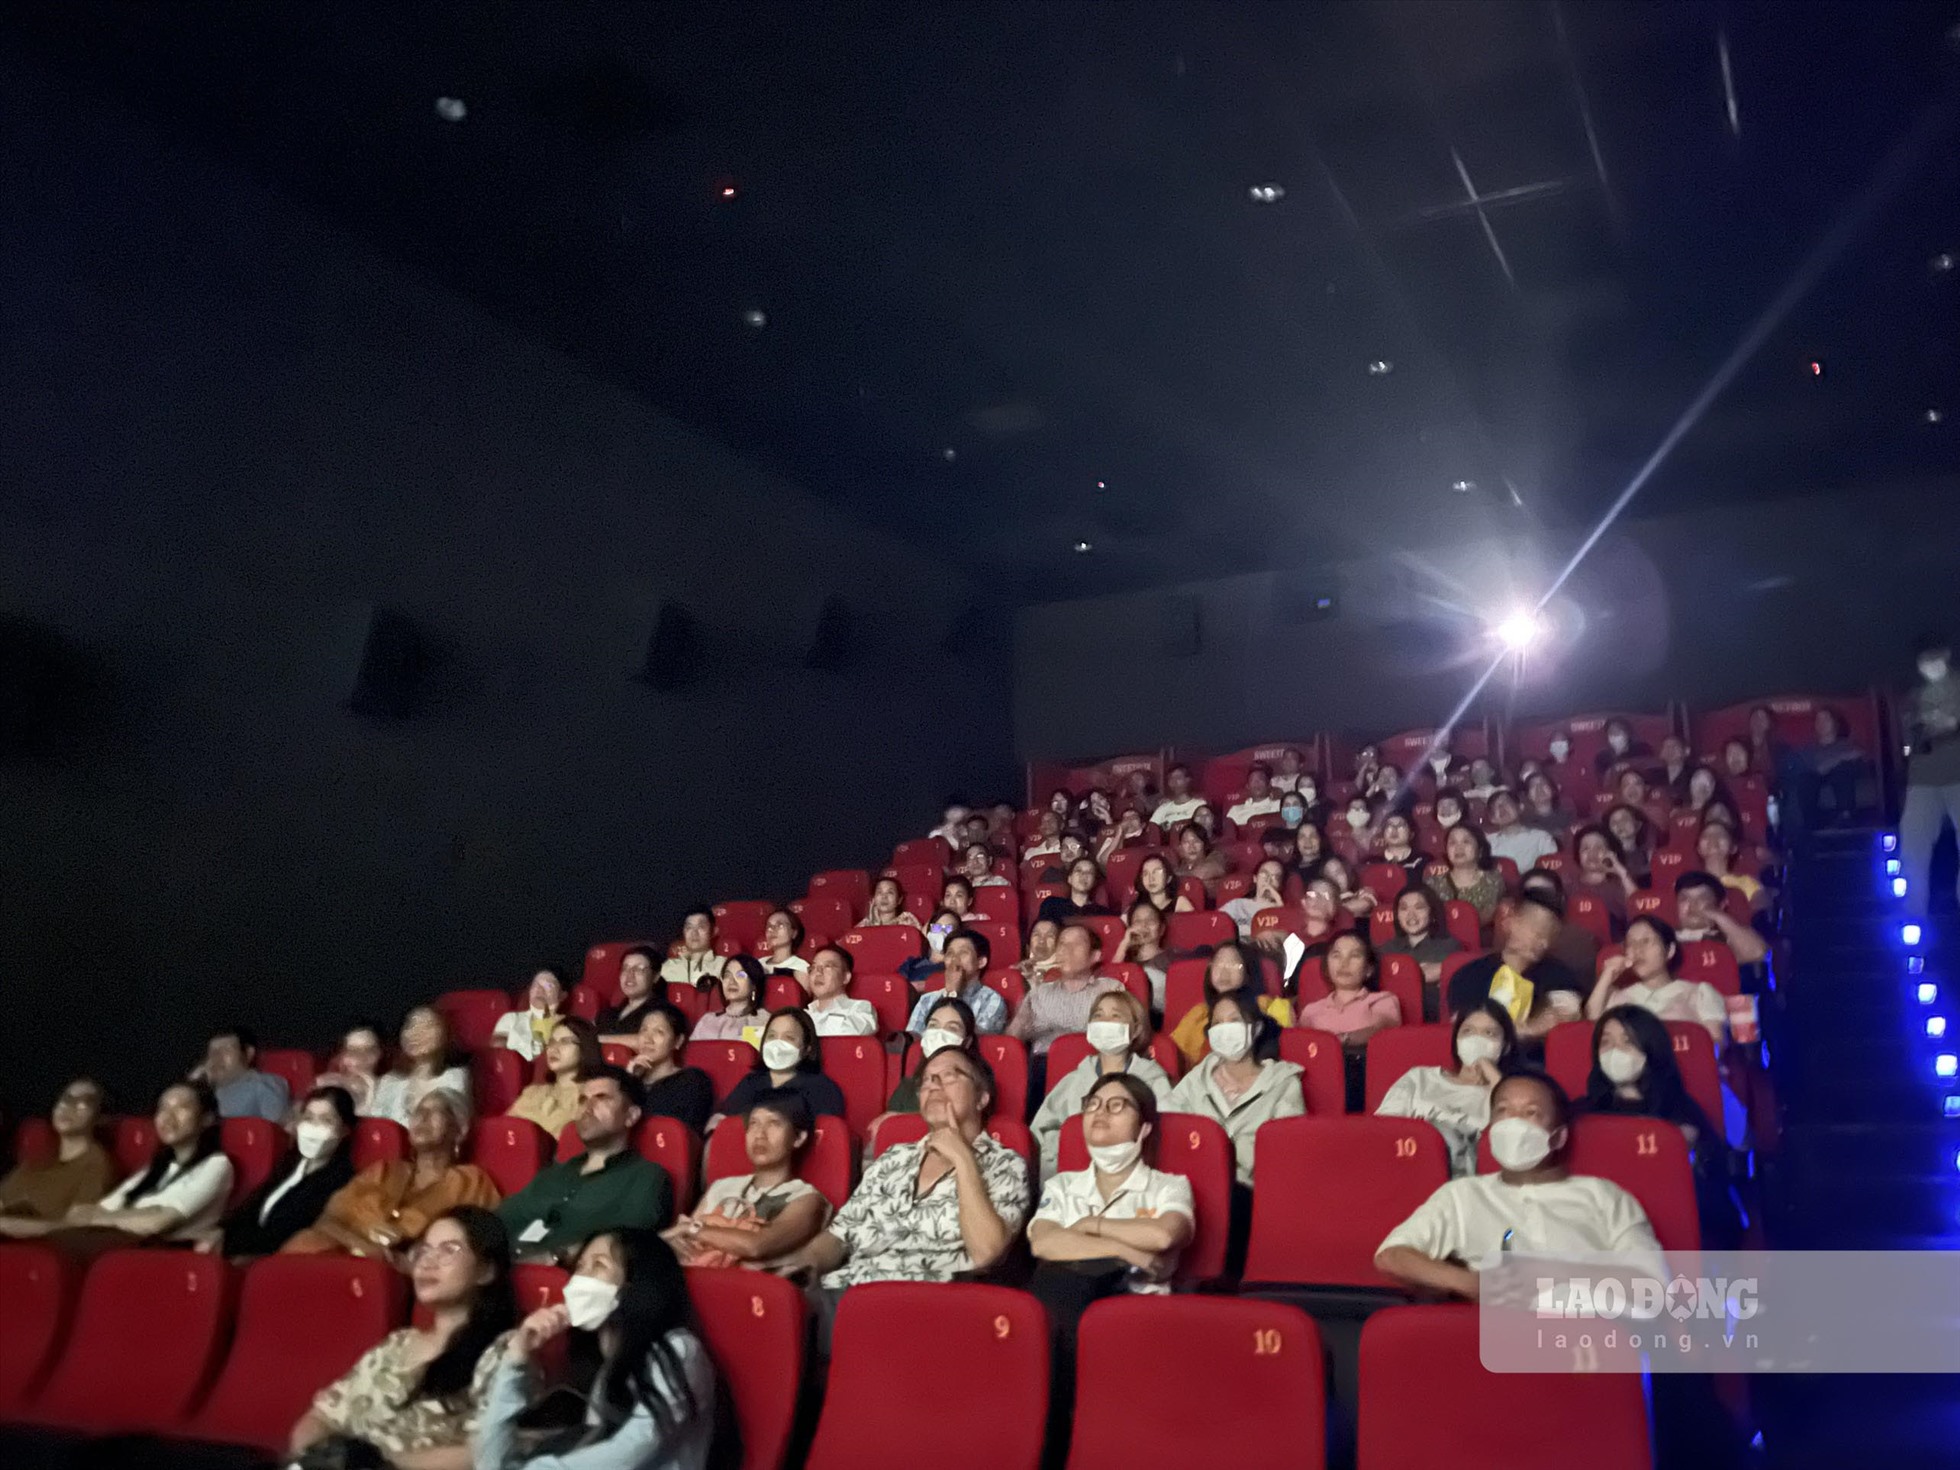 Dù là ngày trong tuần, nhưng lượng người đến xem phim tương đối đông, nhất là các bạn trẻ.